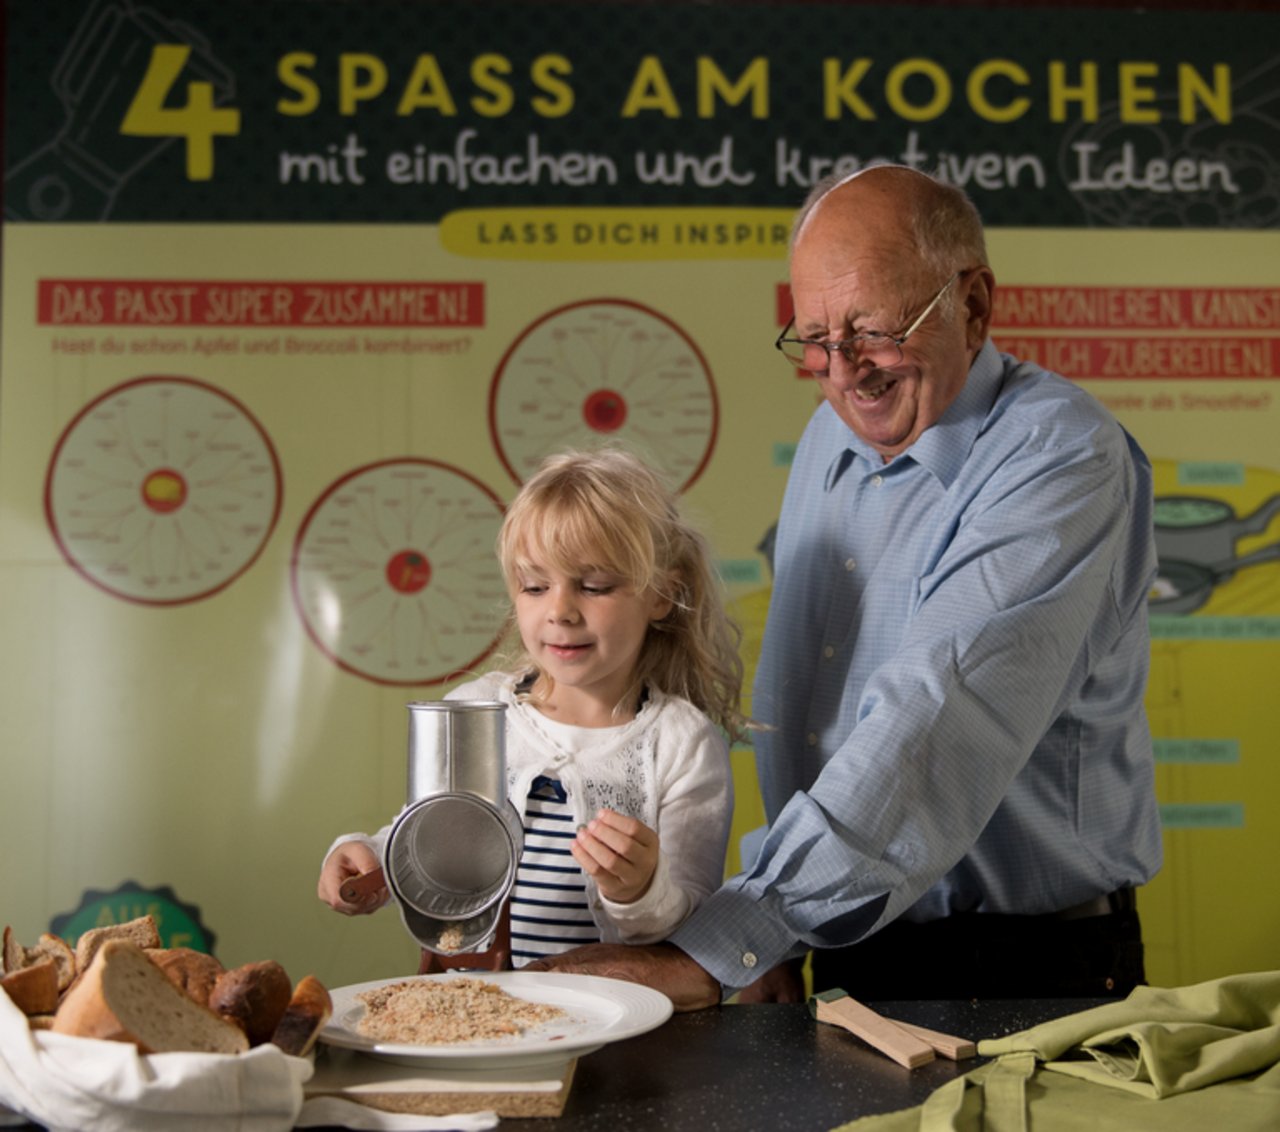 Für Gross und Klein, Jung und Alt: Eine Ausstellung im Agrarmuseum Burgrain widmet sich dem Thema Lebensmittelverschwendung. (Bild zVg)